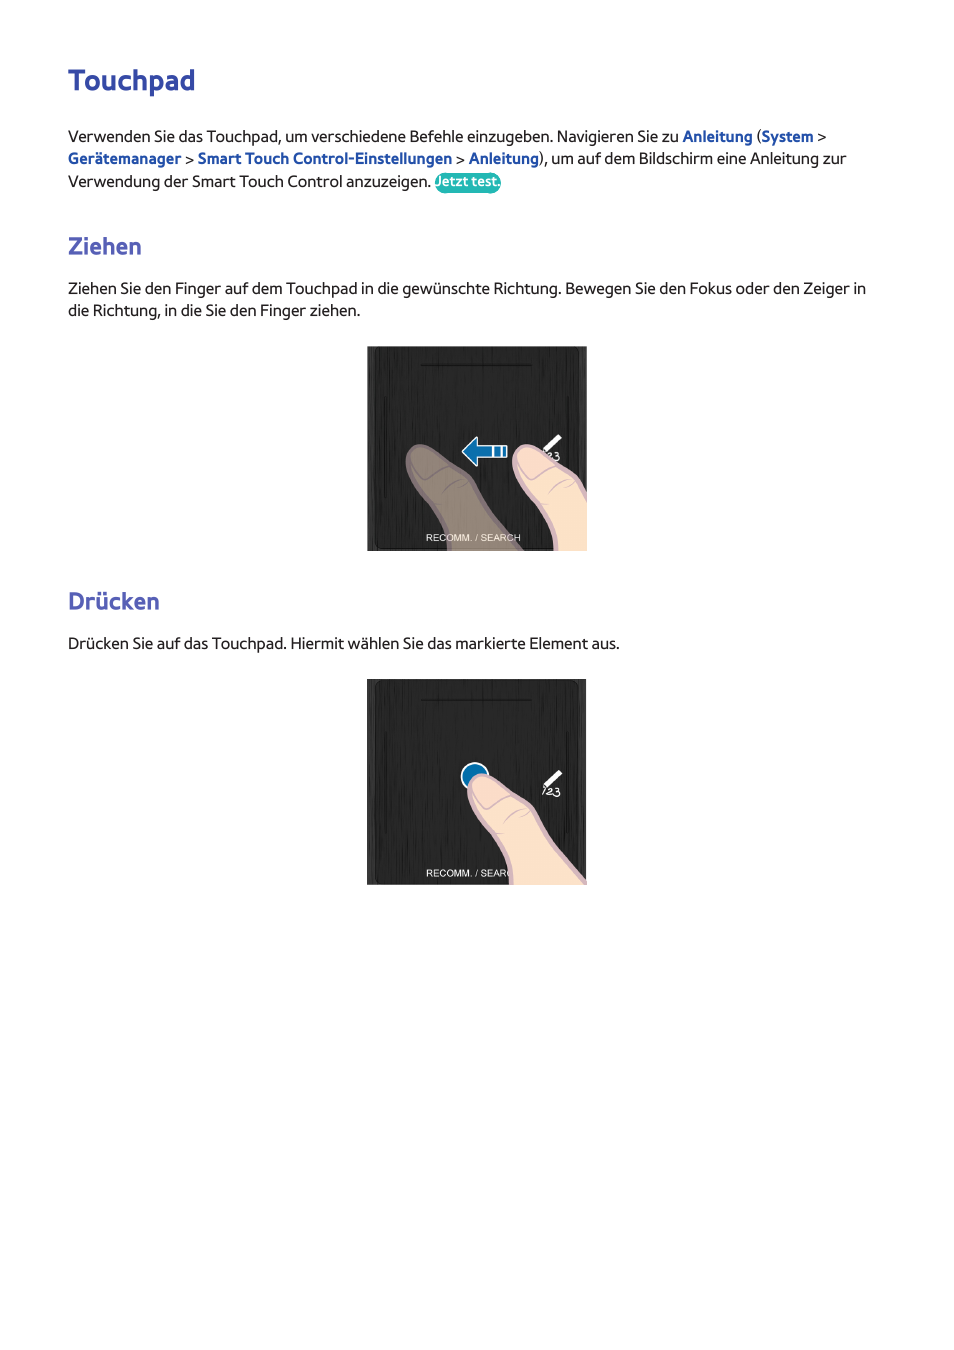 Touchpad, 35 ziehen, 35 drücken | Ziehen, Drücken | Samsung SEK-1000 Benutzerhandbuch | Seite 42 / 184